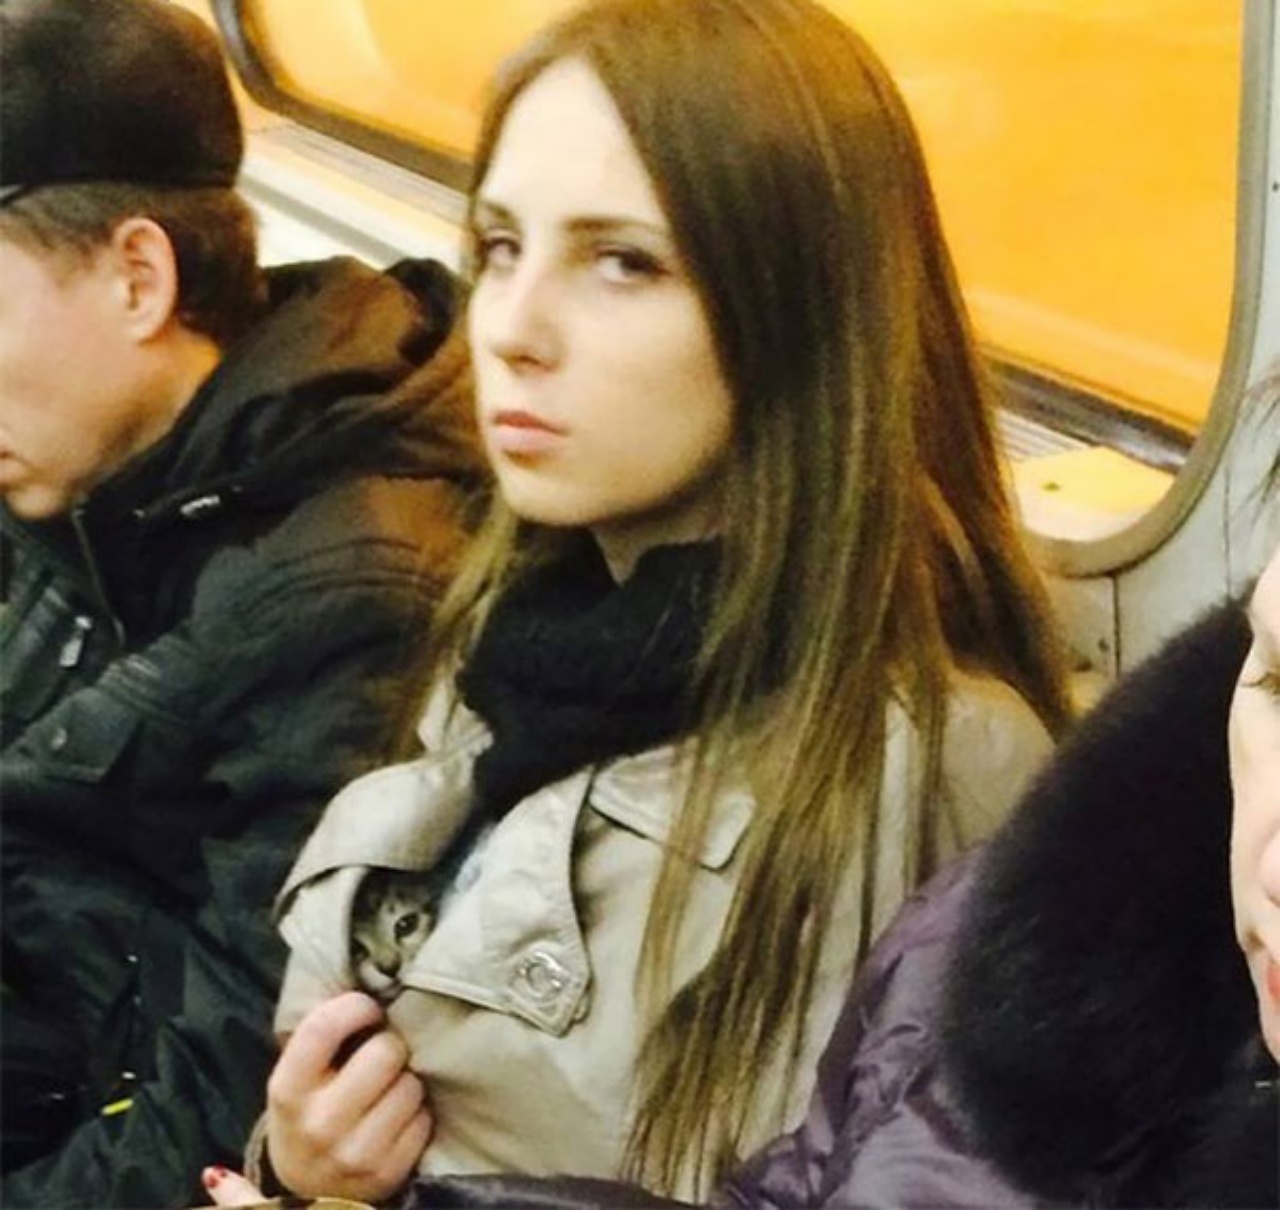 strangest people on subway